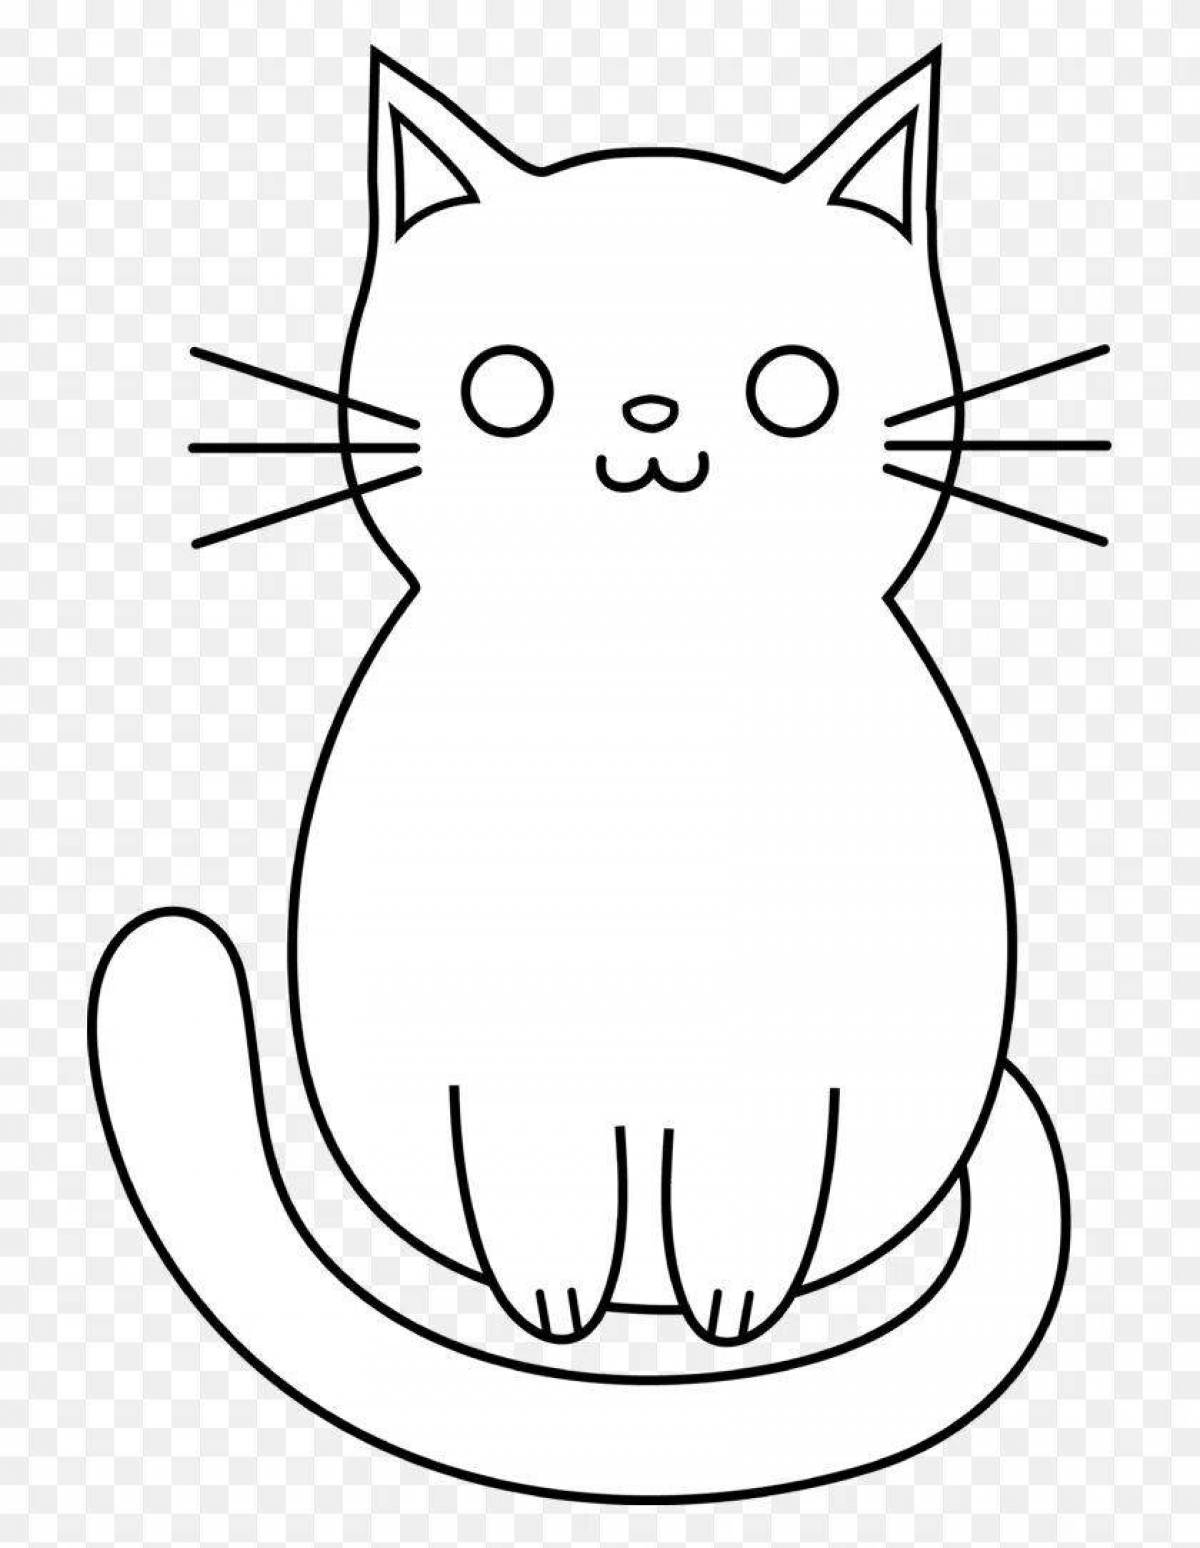 Раскраска яркая квадратная кошка